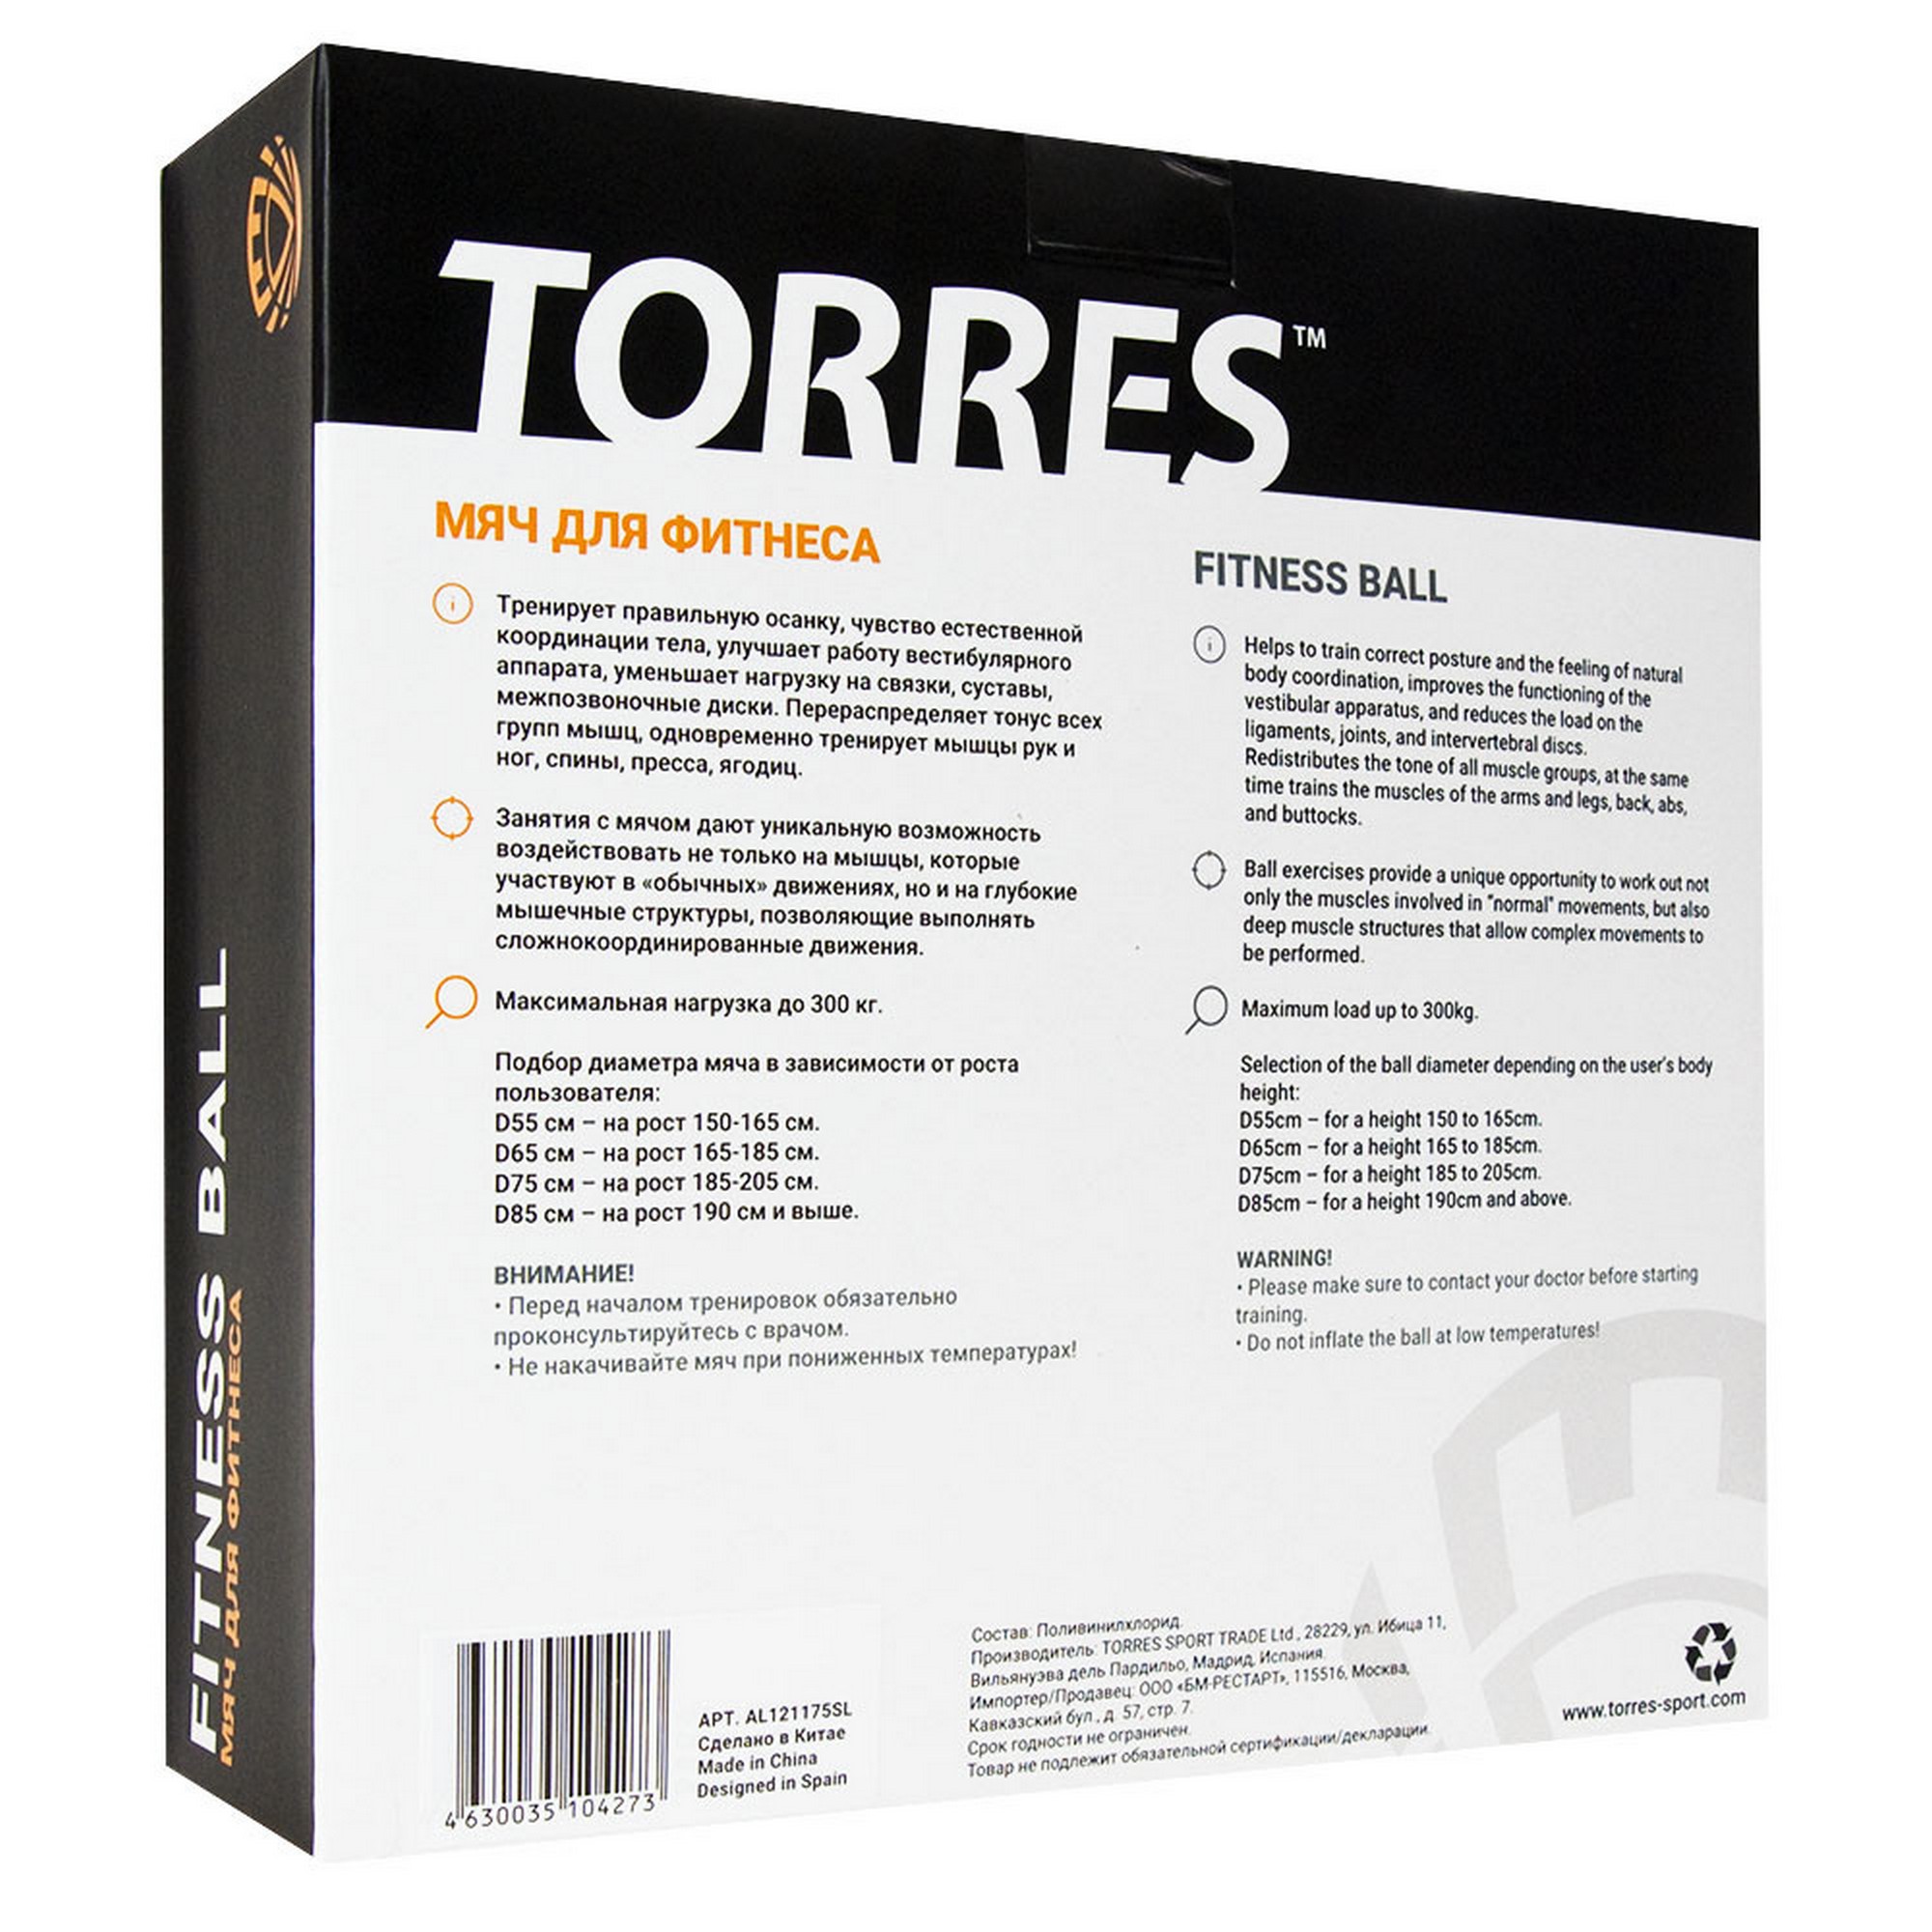 Мяч гимнастический d65 см Torres с насосом AL122165GR серый 2000_2000